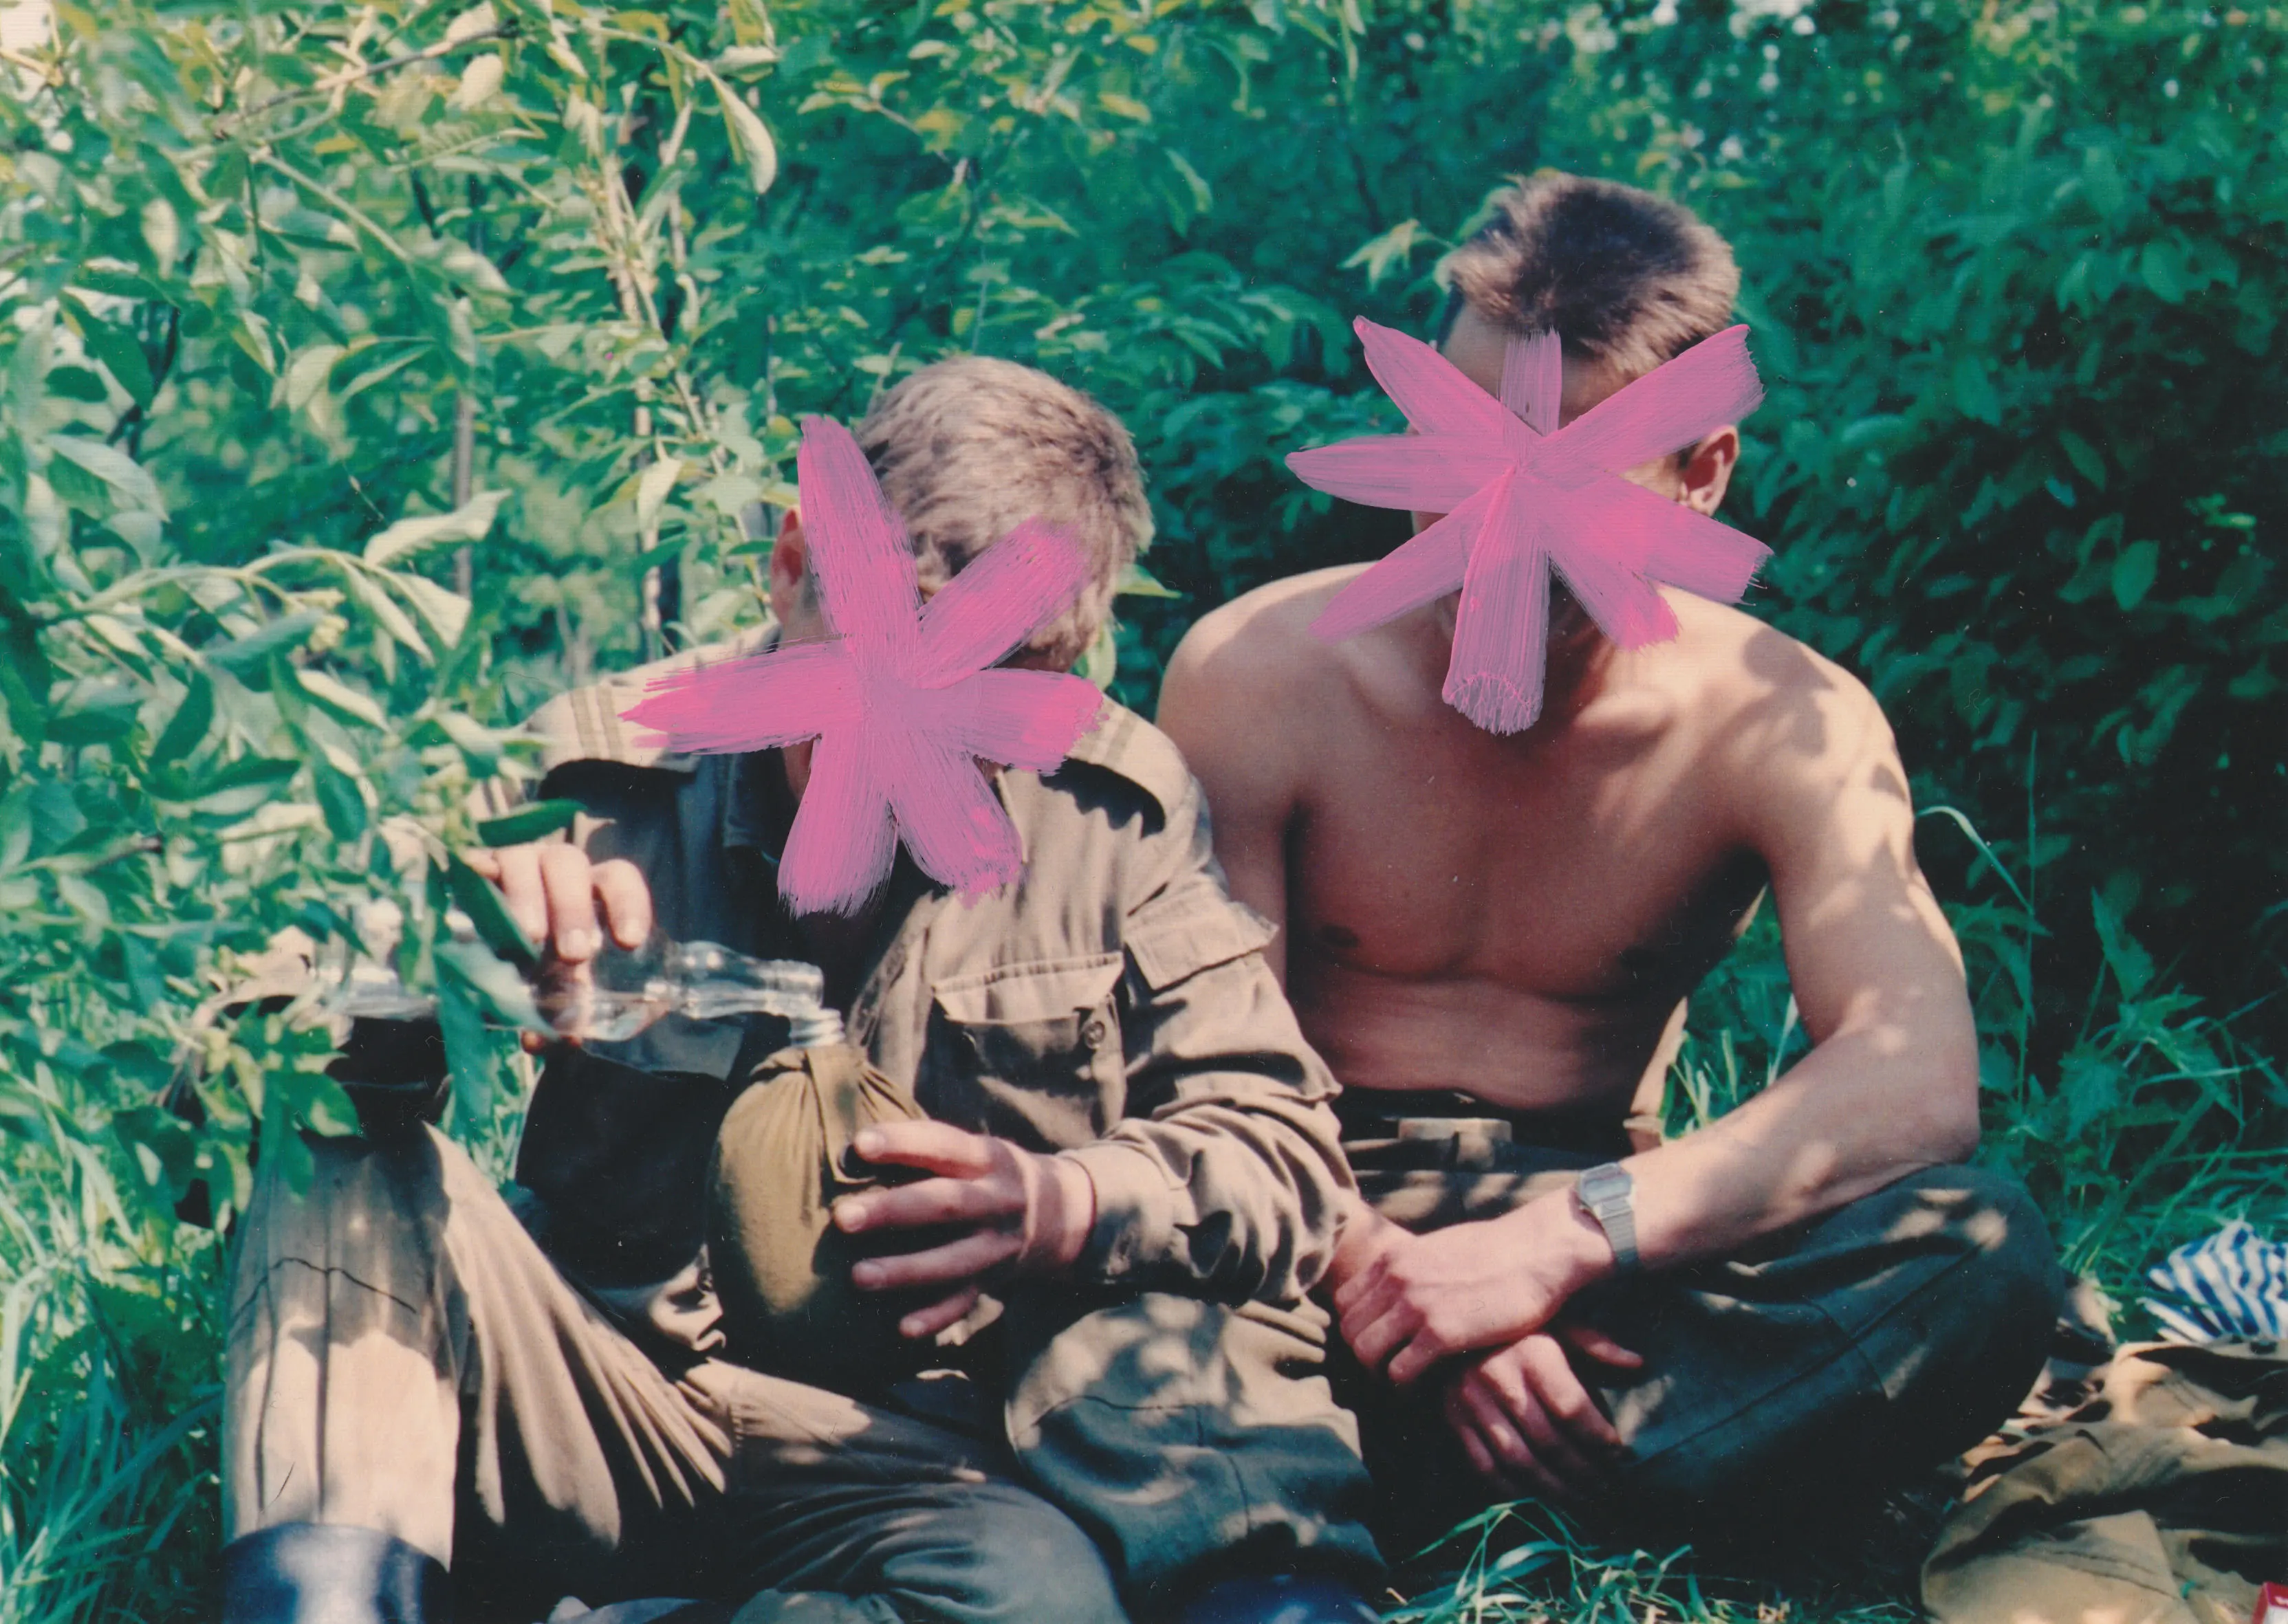 Zdjęcie jest kadrem z filmu "Mon chéri Soviétique" Karola Radziszewskiego. Przedstawia dwóch siedzących wśród zieleni, młodych mężczyzn. Jeden z nich ubrany jest w mundur wojskowy, drugi jest rozebrany do pasa. Mężczyzna w mundurze przelewa przeźroczystą ciecz ze szklanej butelki do bukłaka. Na ich twarzach namalowane są różowe gwiazdy, nie sposób określić ich tożsamości. 